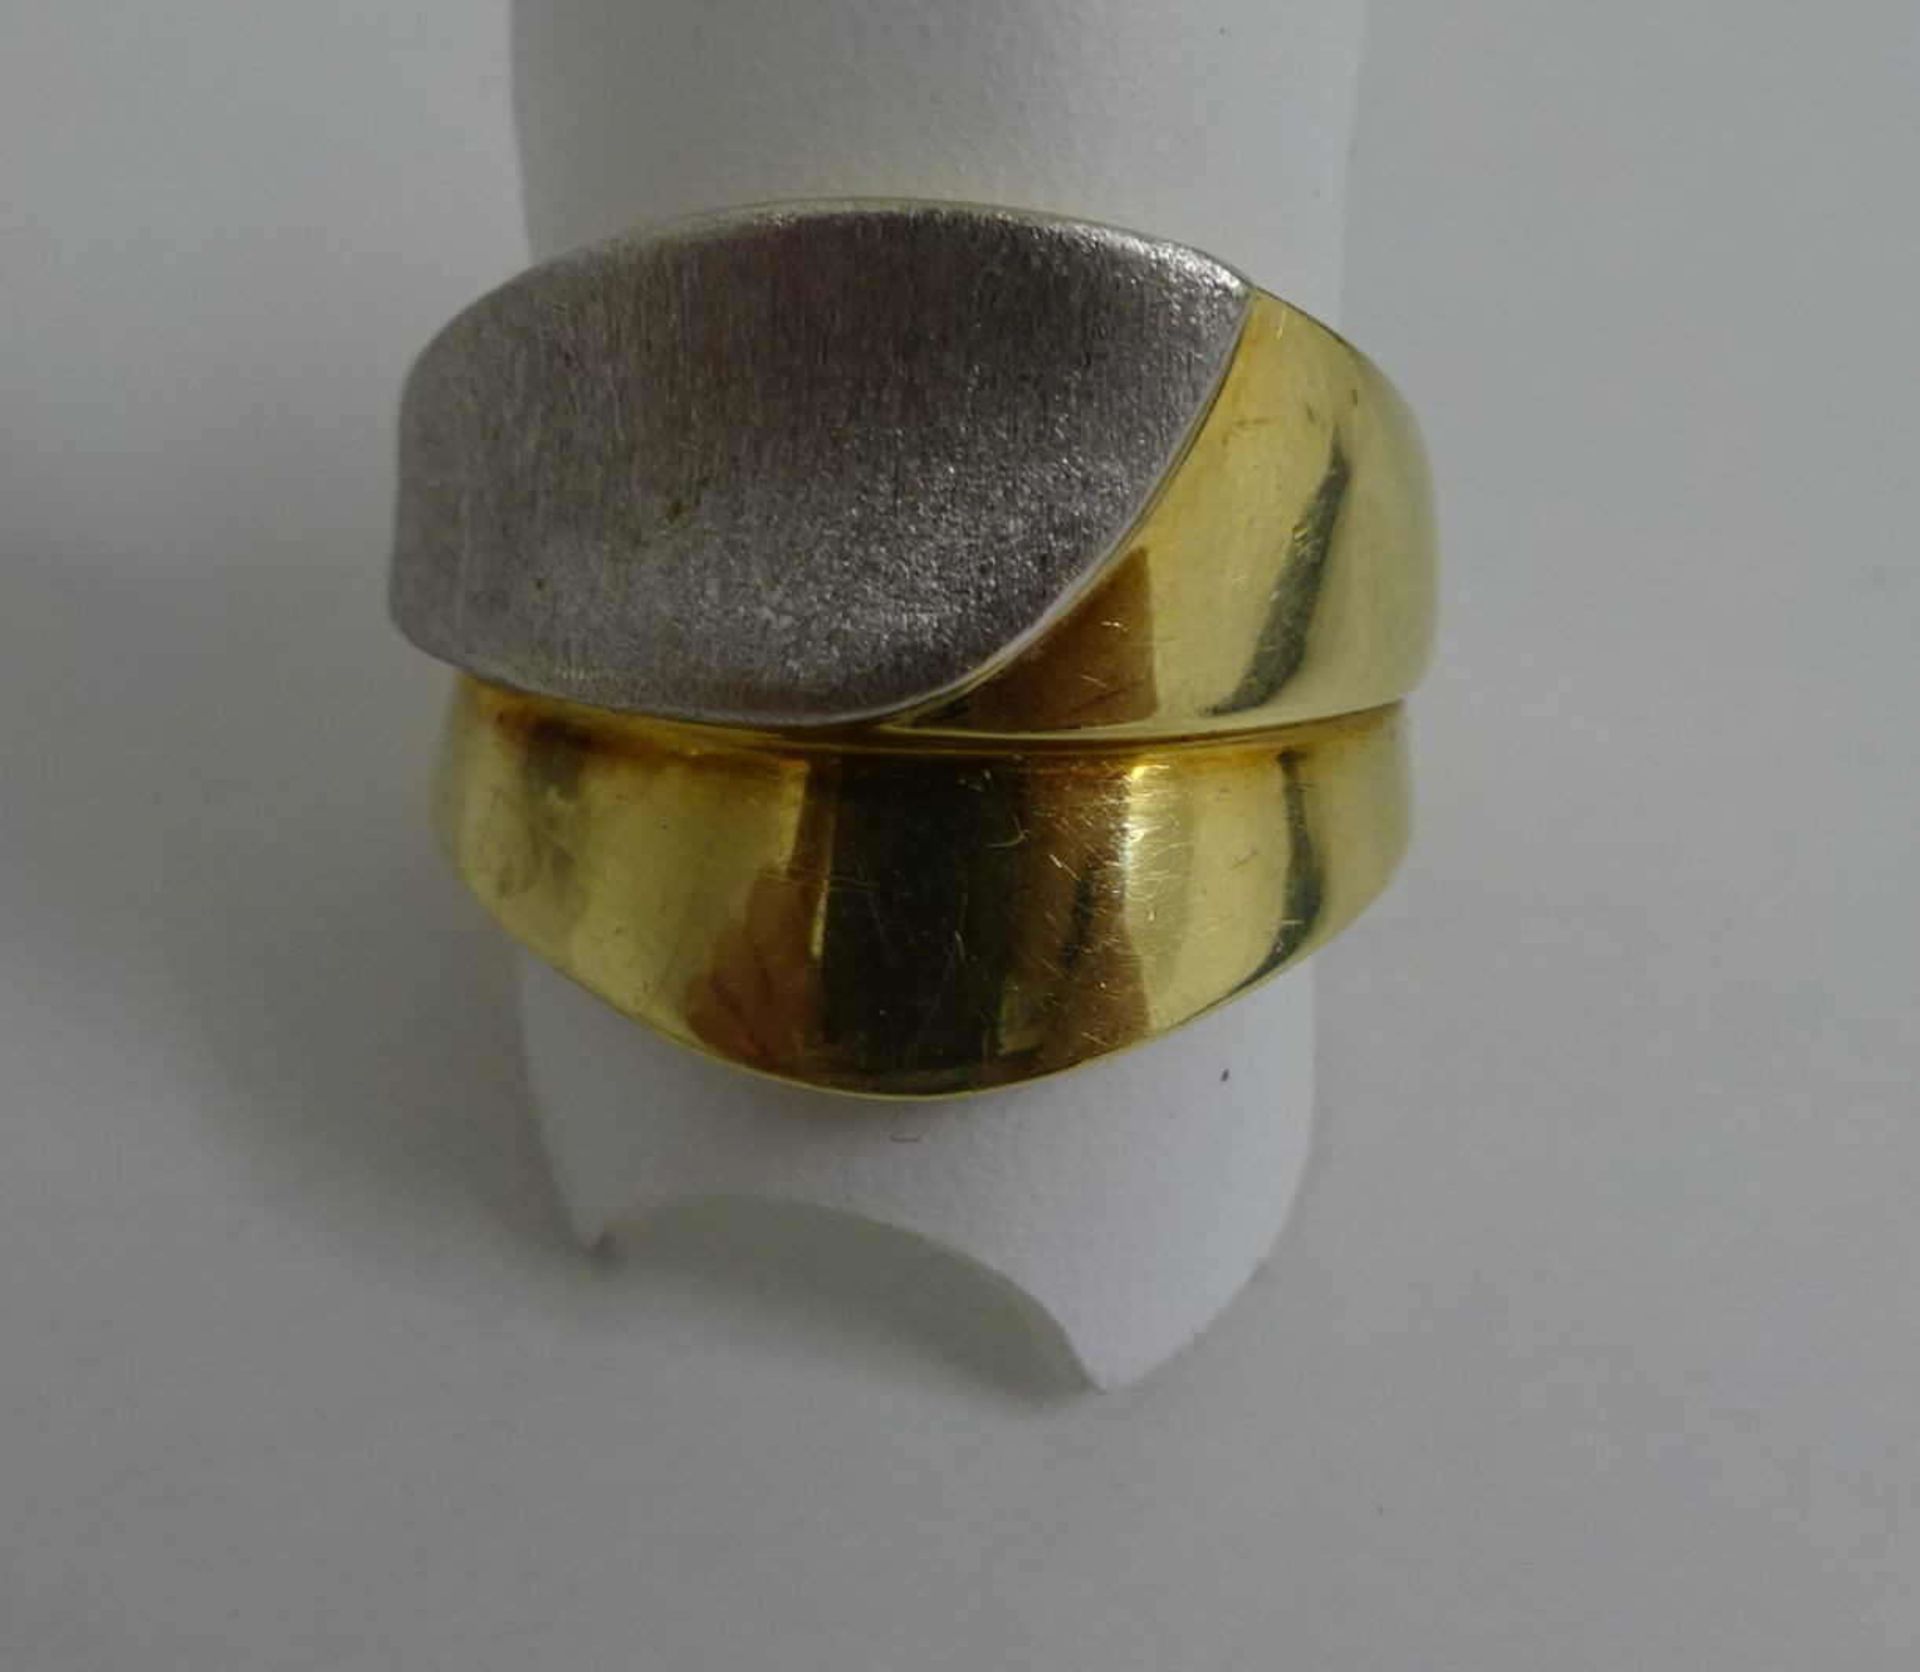 Damenring, 585er Gelb- und Weißgold, Ringgröße 58. Gewicht ca. 12,4 gr.Ladies ring, 585er yellow and